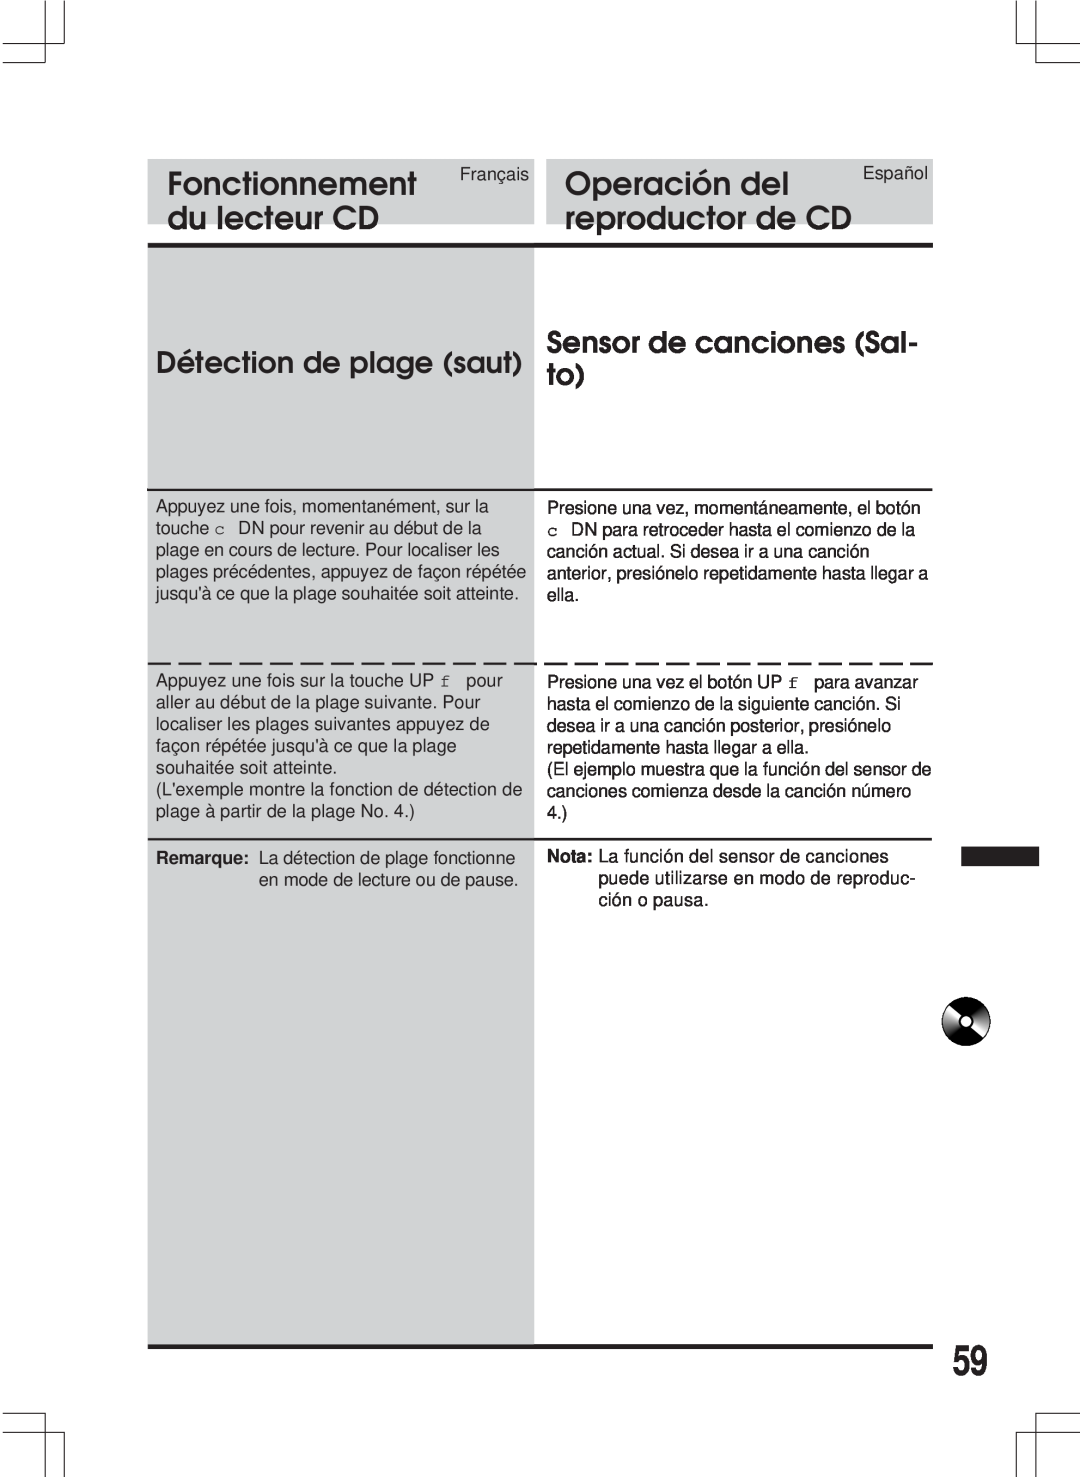 Alpine MDA-W890 Sensor de canciones Sal Détection de plage saut to, Fonctionnement, Operación del, du lecteur CD 